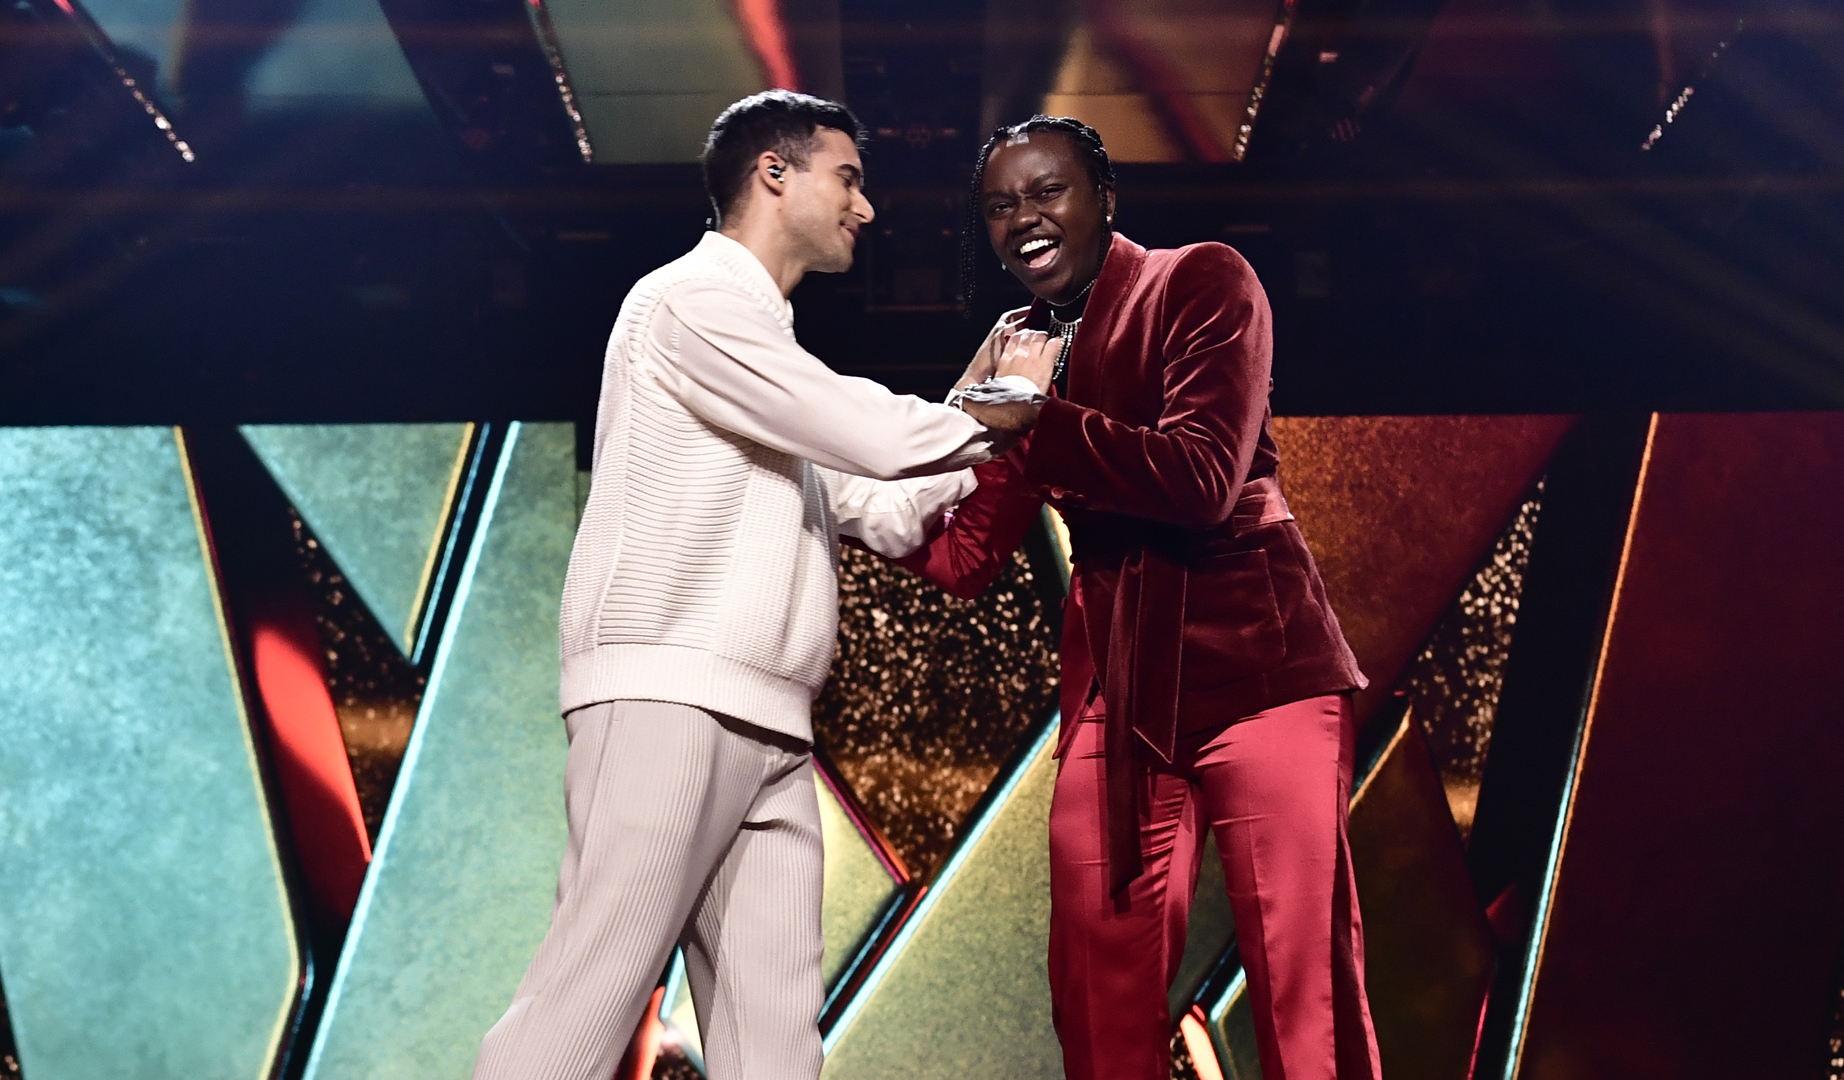 Audiencias Sociales: la gran final del Melodifestivalen 2021 ha tenido un impacto de 9,9M de usuarios